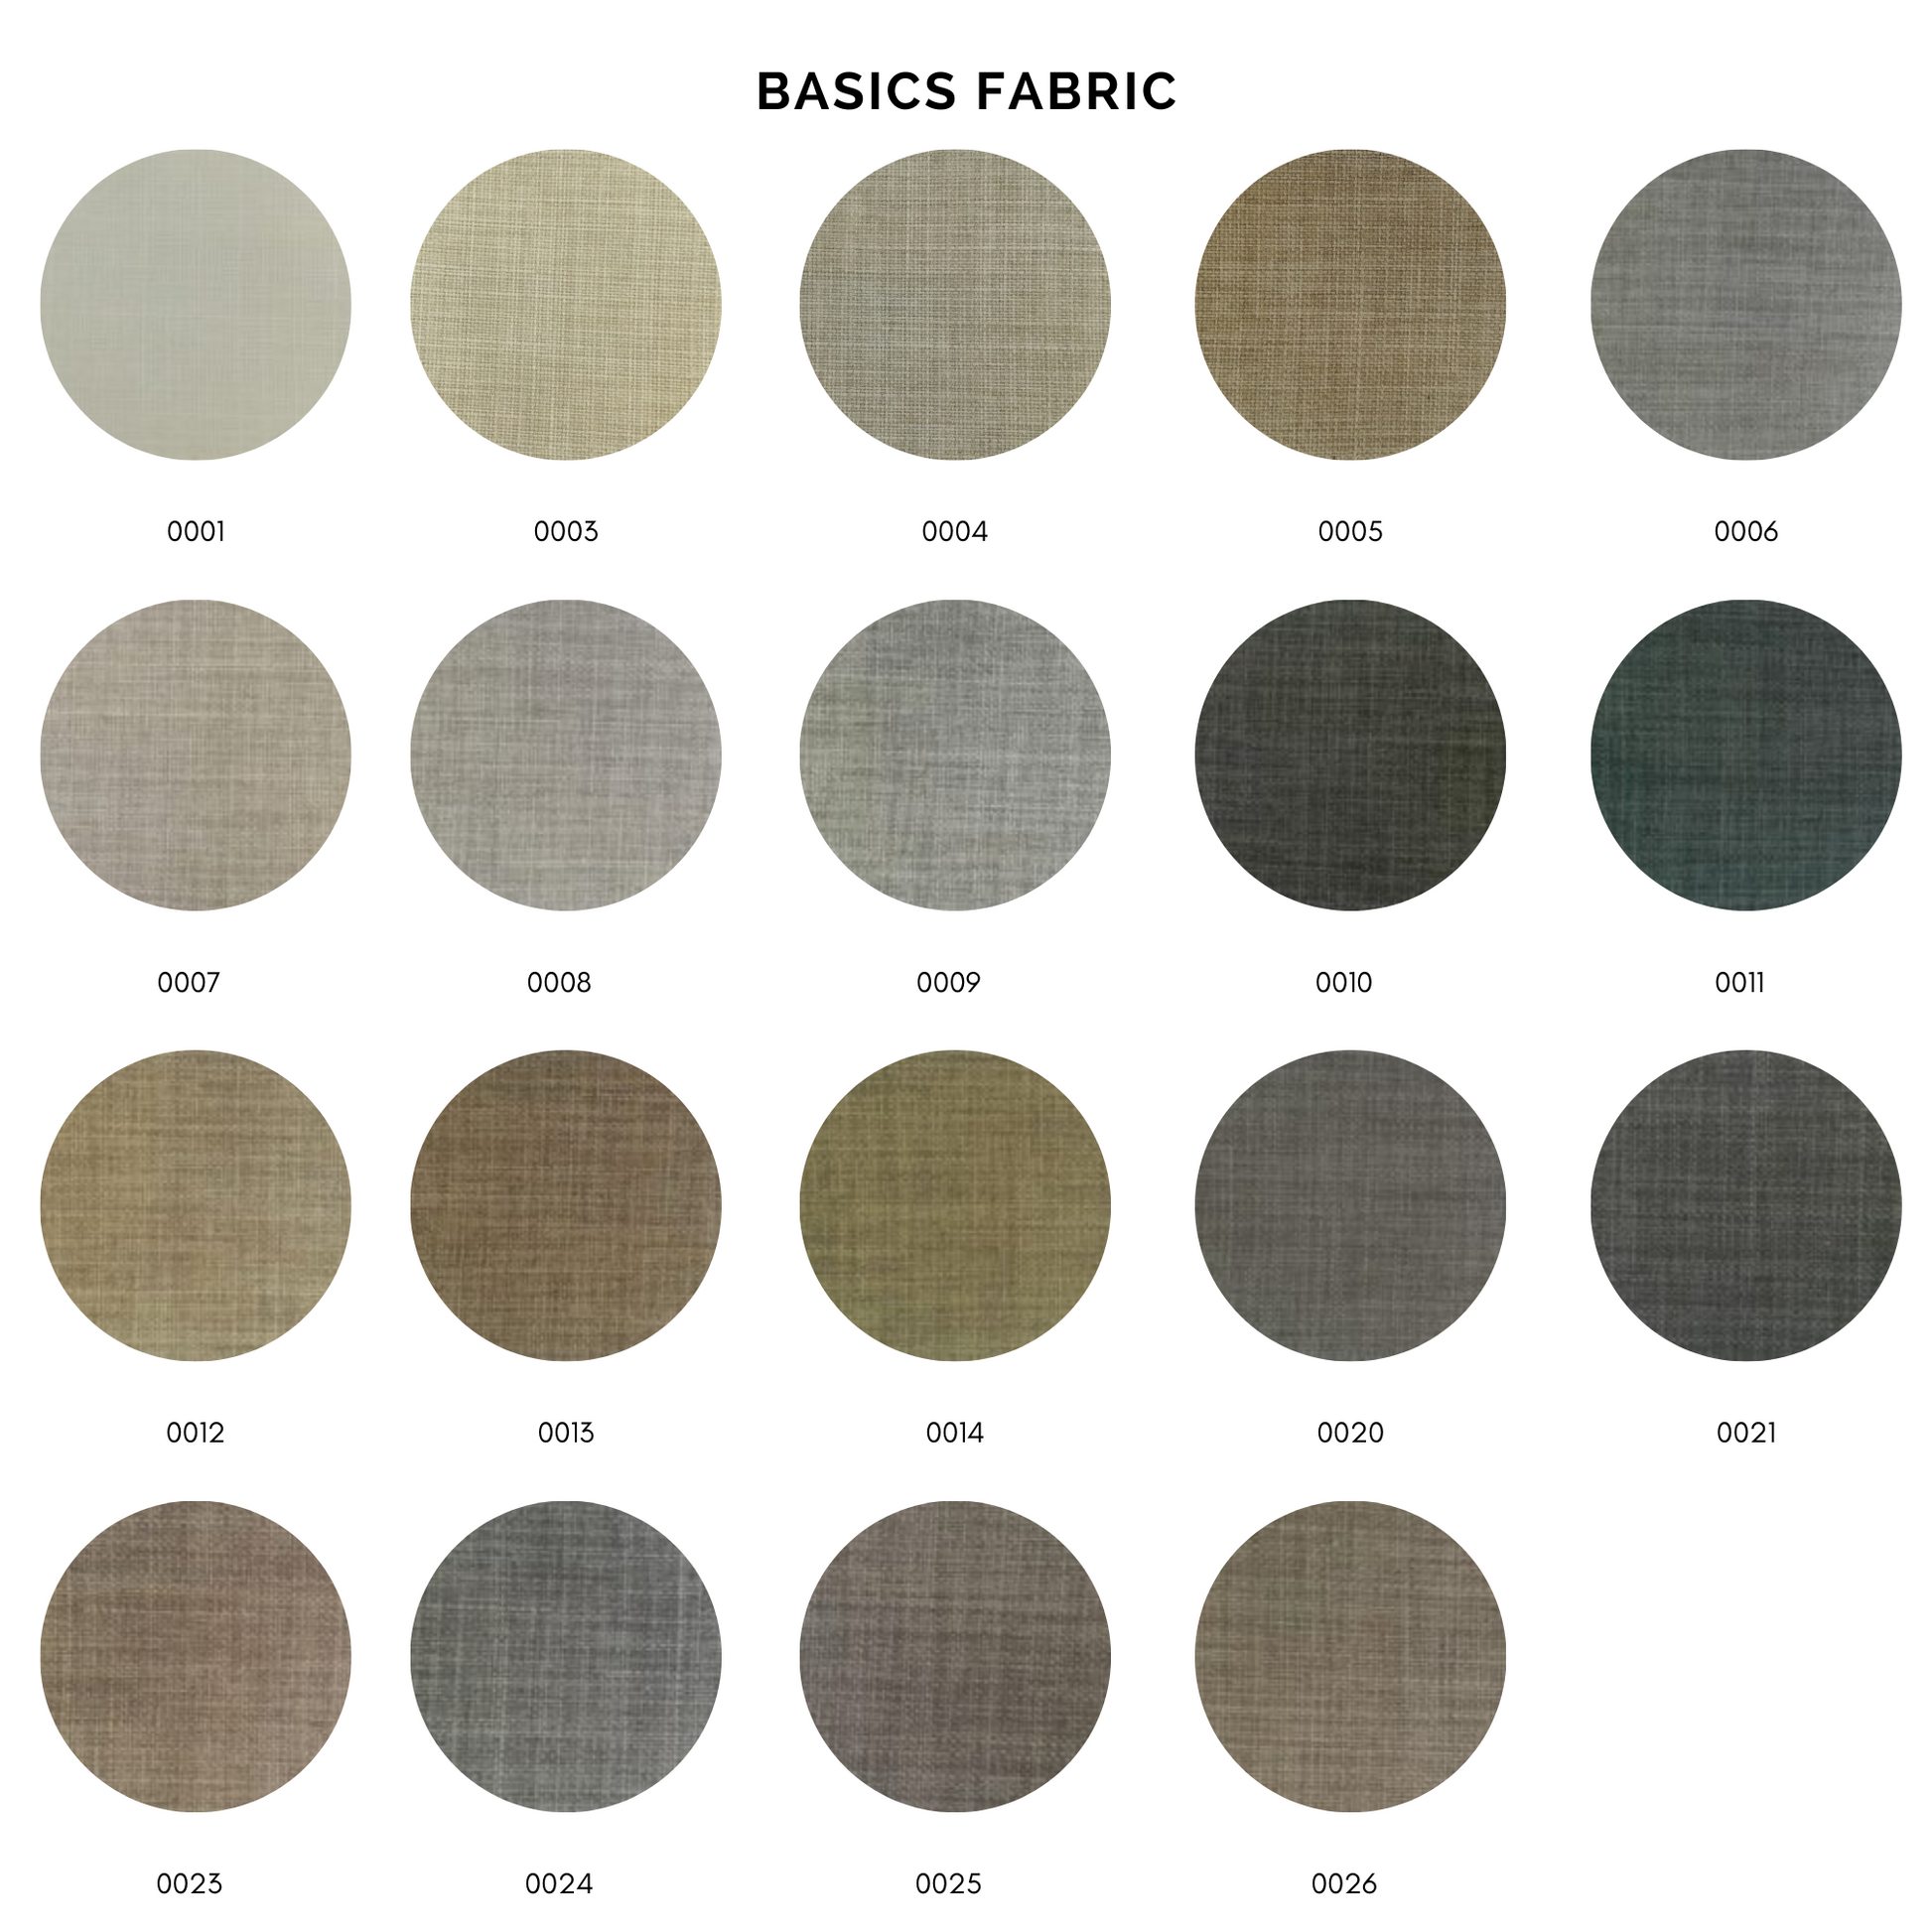 Easy Bench - Basics Fabric - Elula Furniture